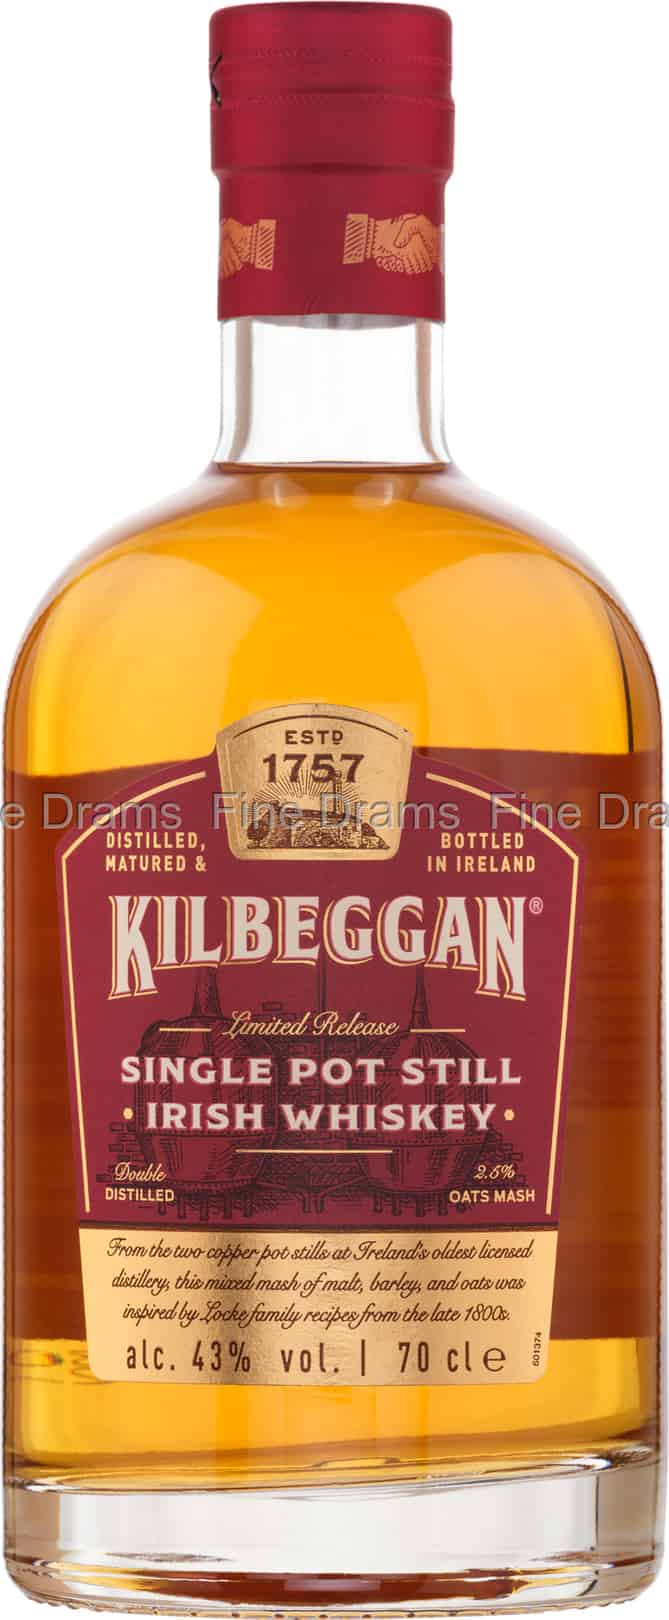 Single Whiskey Still Pot Kilbeggan